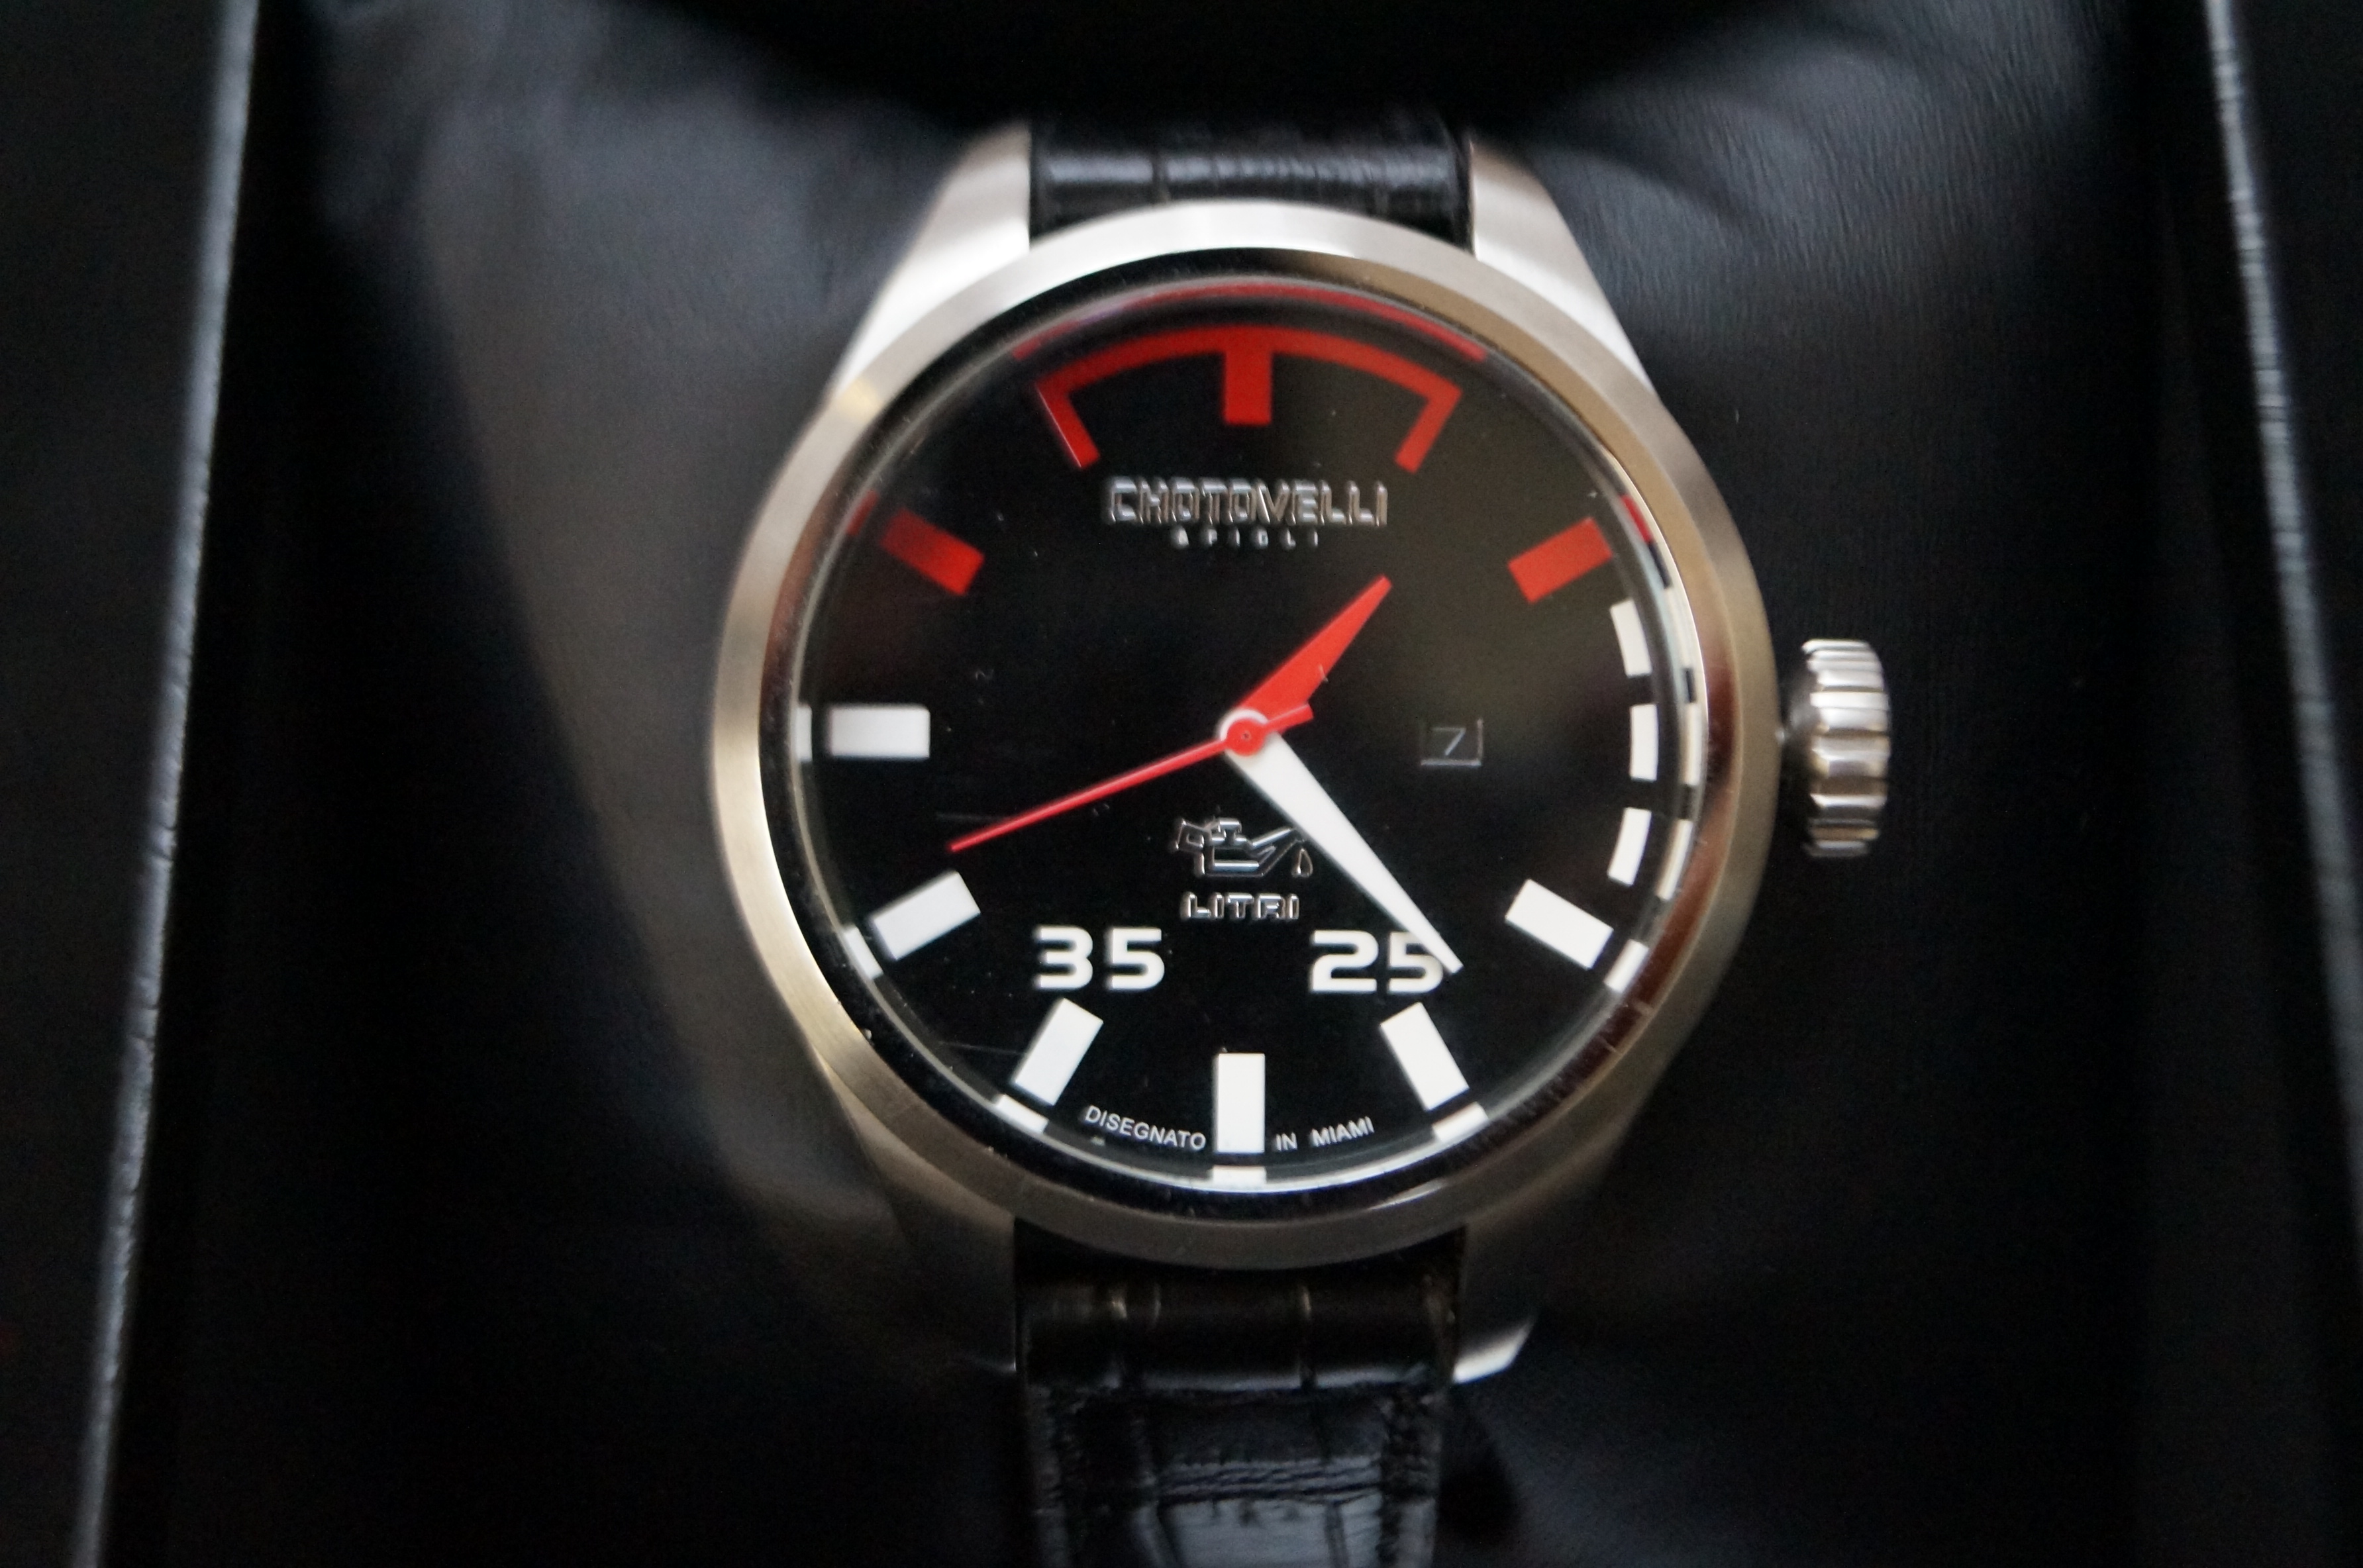 Gents Chotovelli & Figli Alfa Romeo Wristwatch Box